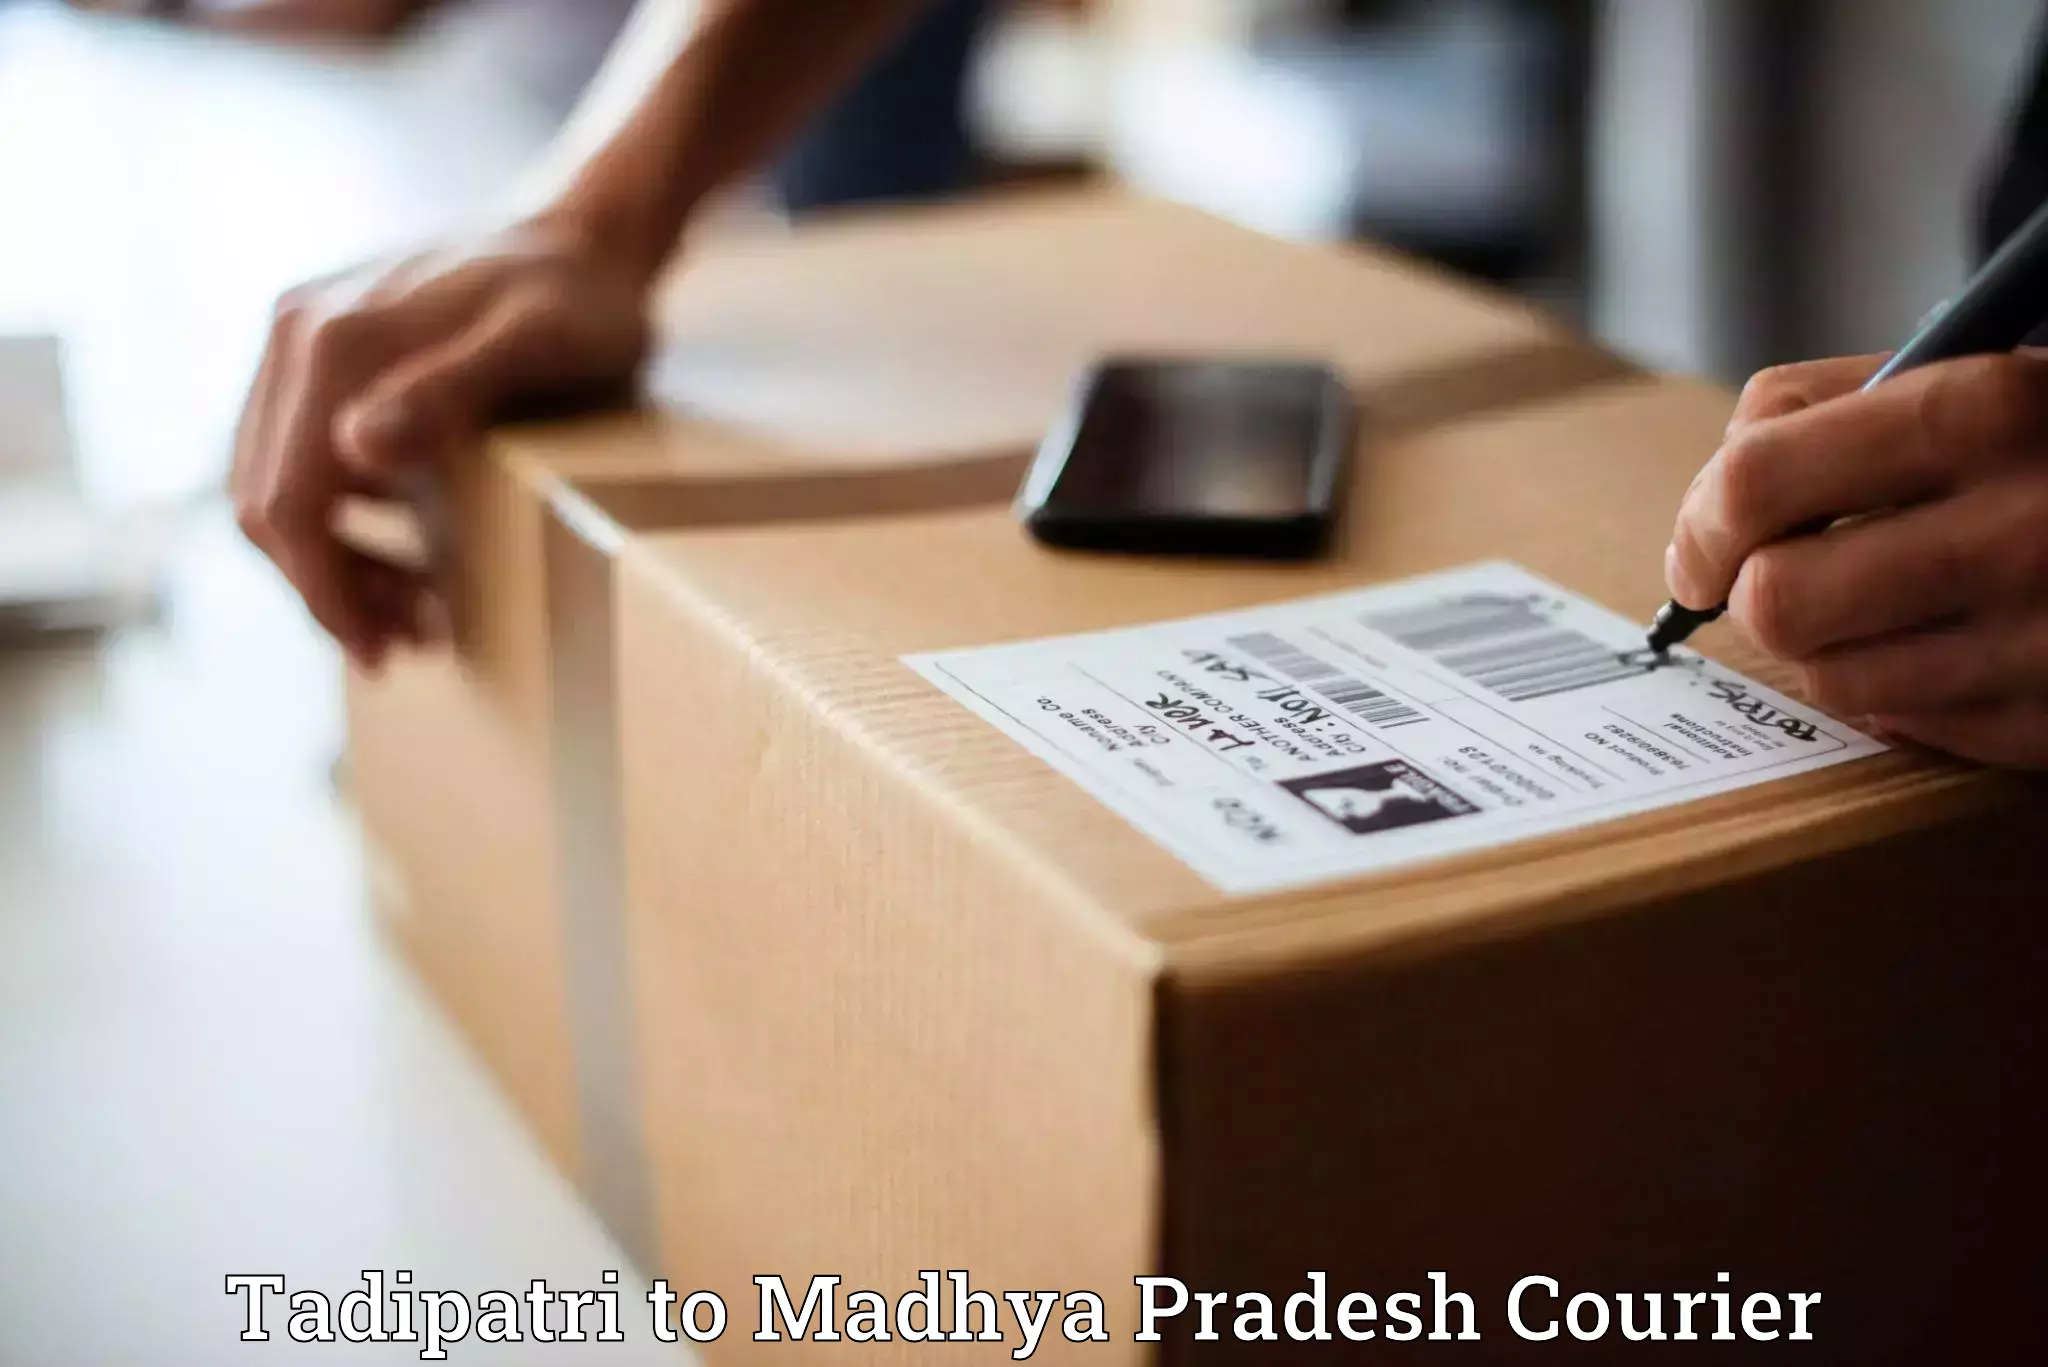 Professional courier handling Tadipatri to Tarana Ujjain